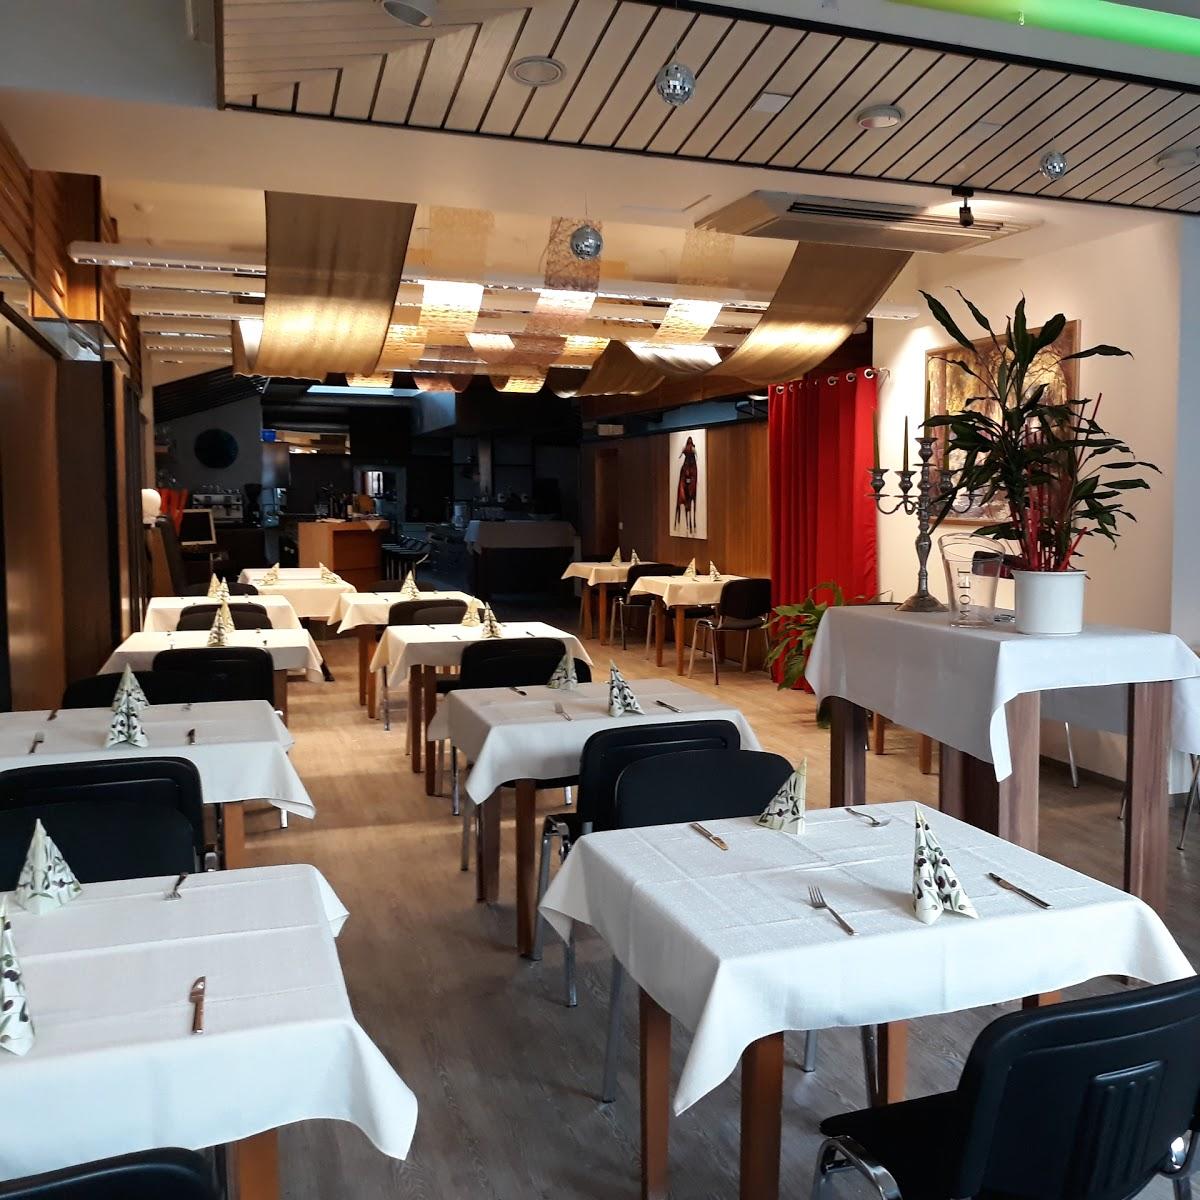 Restaurant "Torres Tapas Eventraum" in Bühl